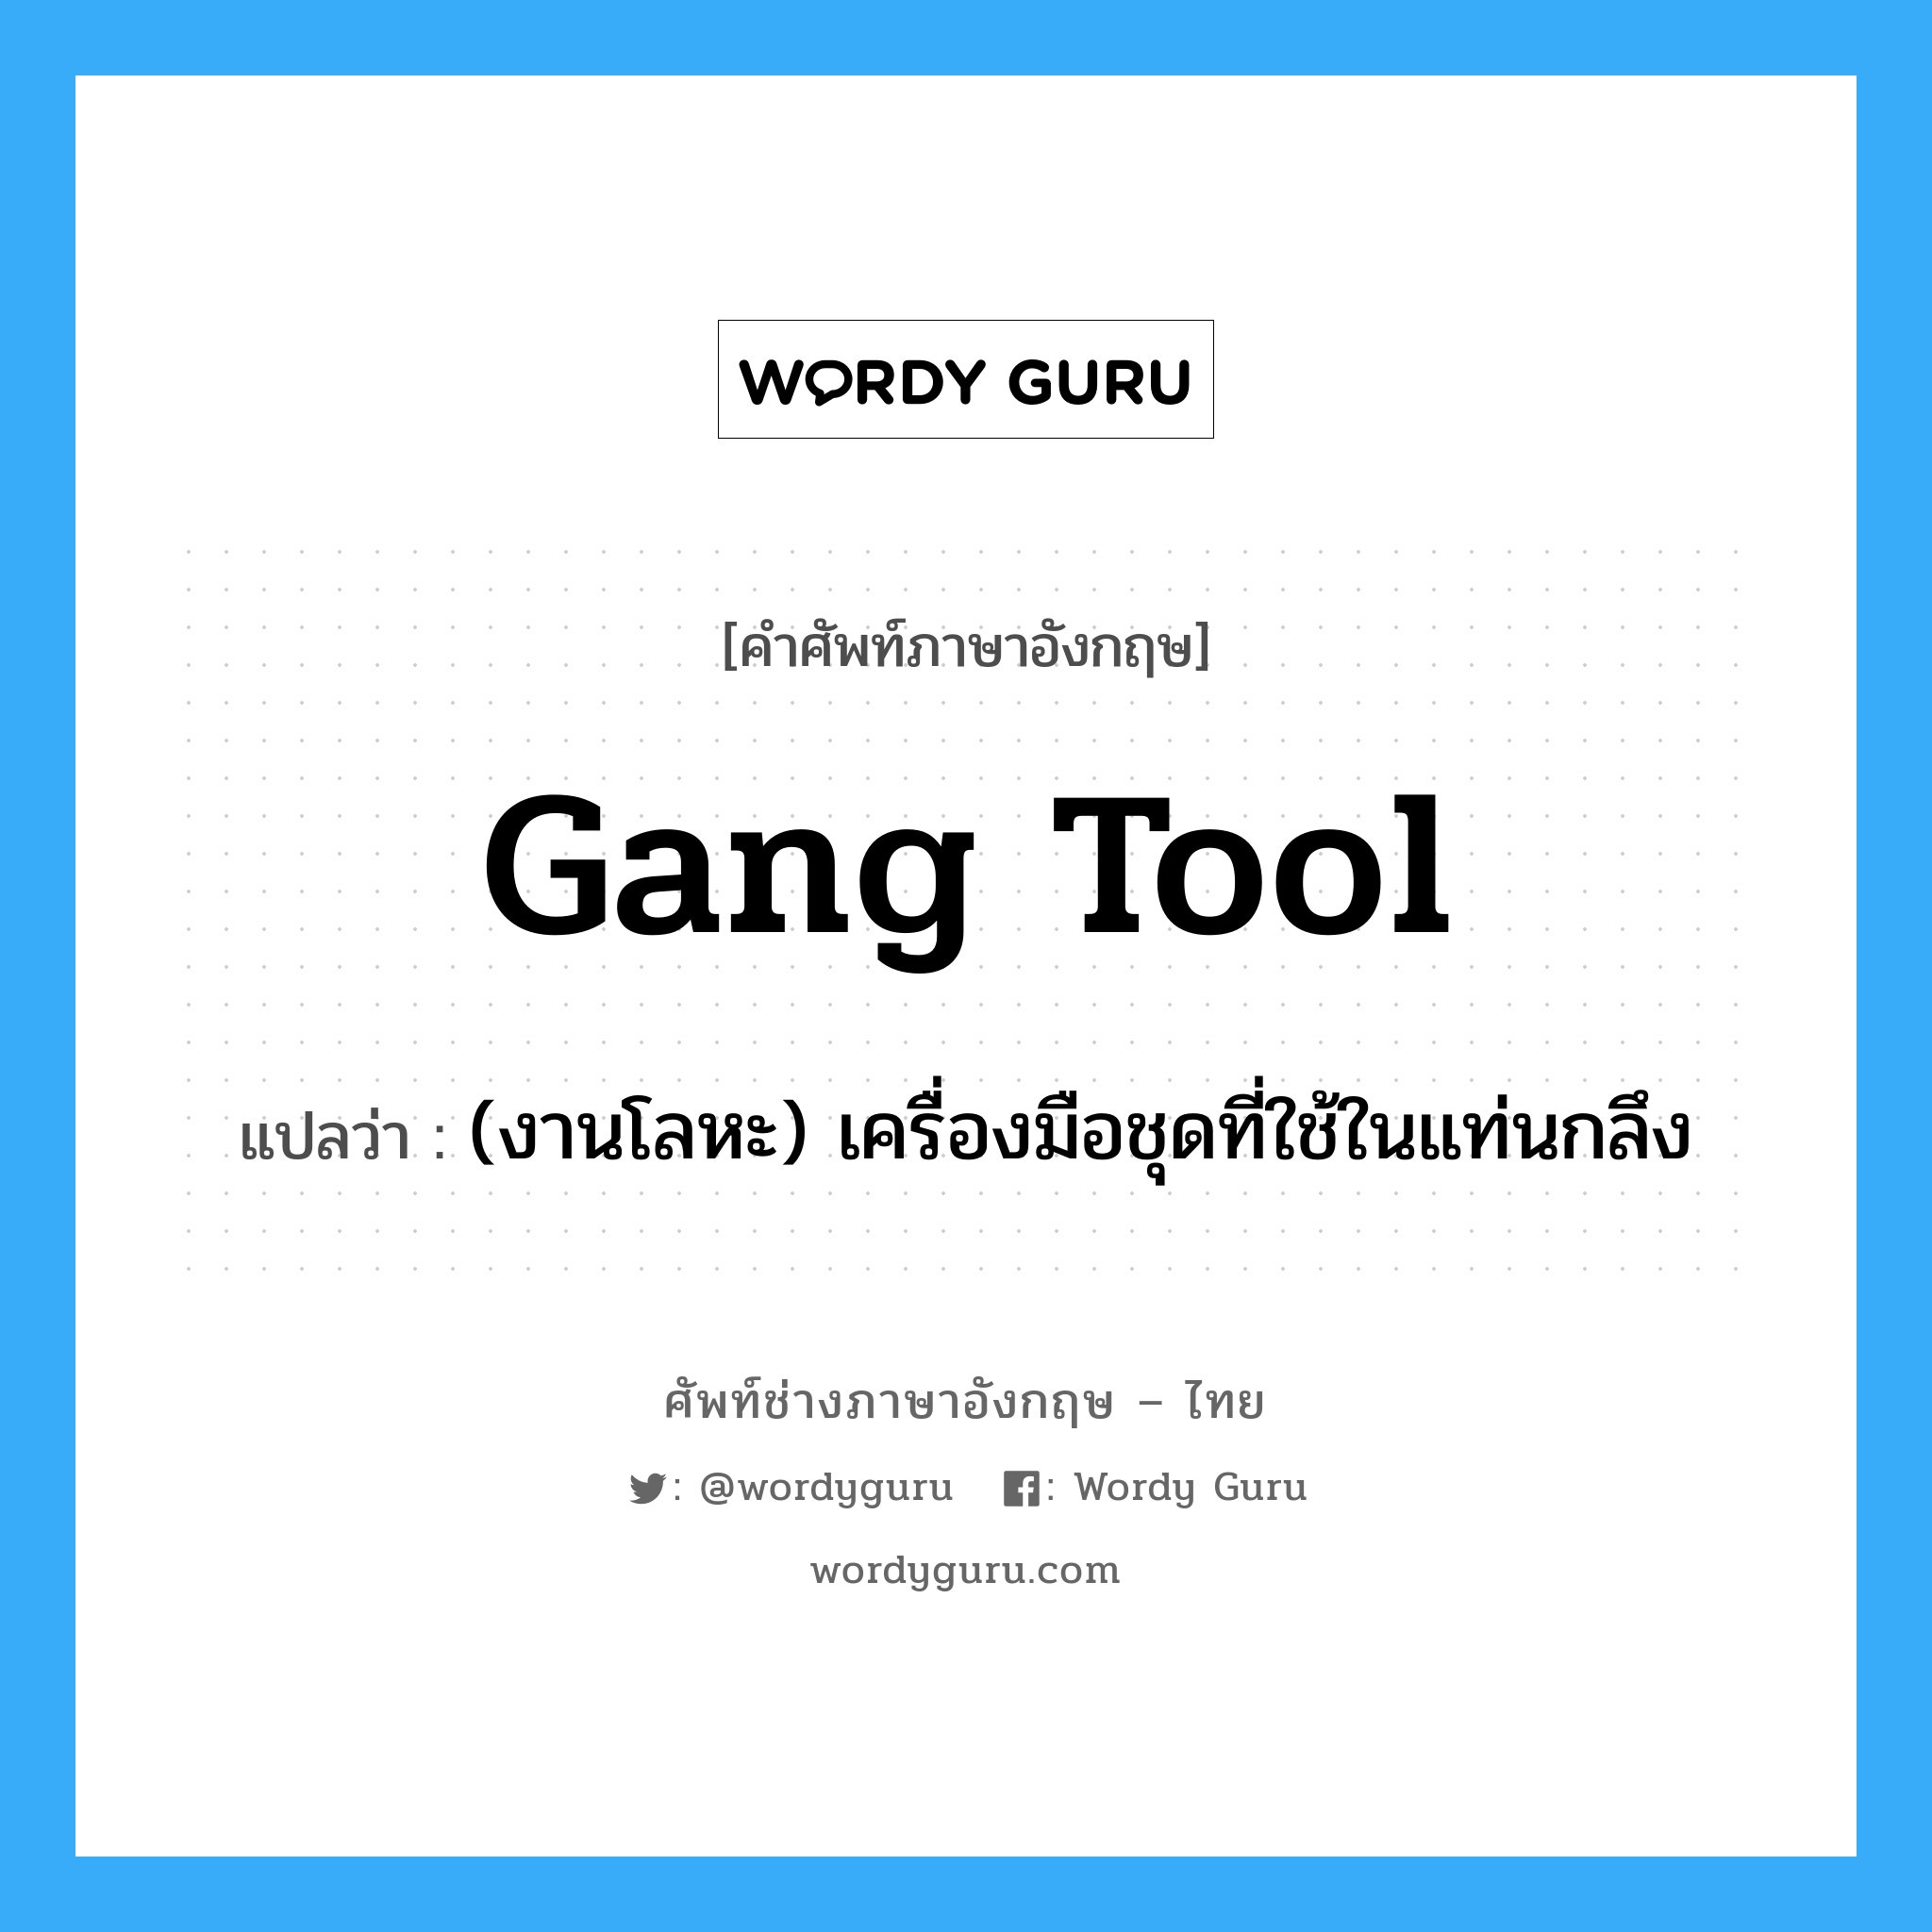 gang tool แปลว่า?, คำศัพท์ช่างภาษาอังกฤษ - ไทย gang tool คำศัพท์ภาษาอังกฤษ gang tool แปลว่า (งานโลหะ) เครื่องมือชุดที่ใช้ในแท่นกลึง